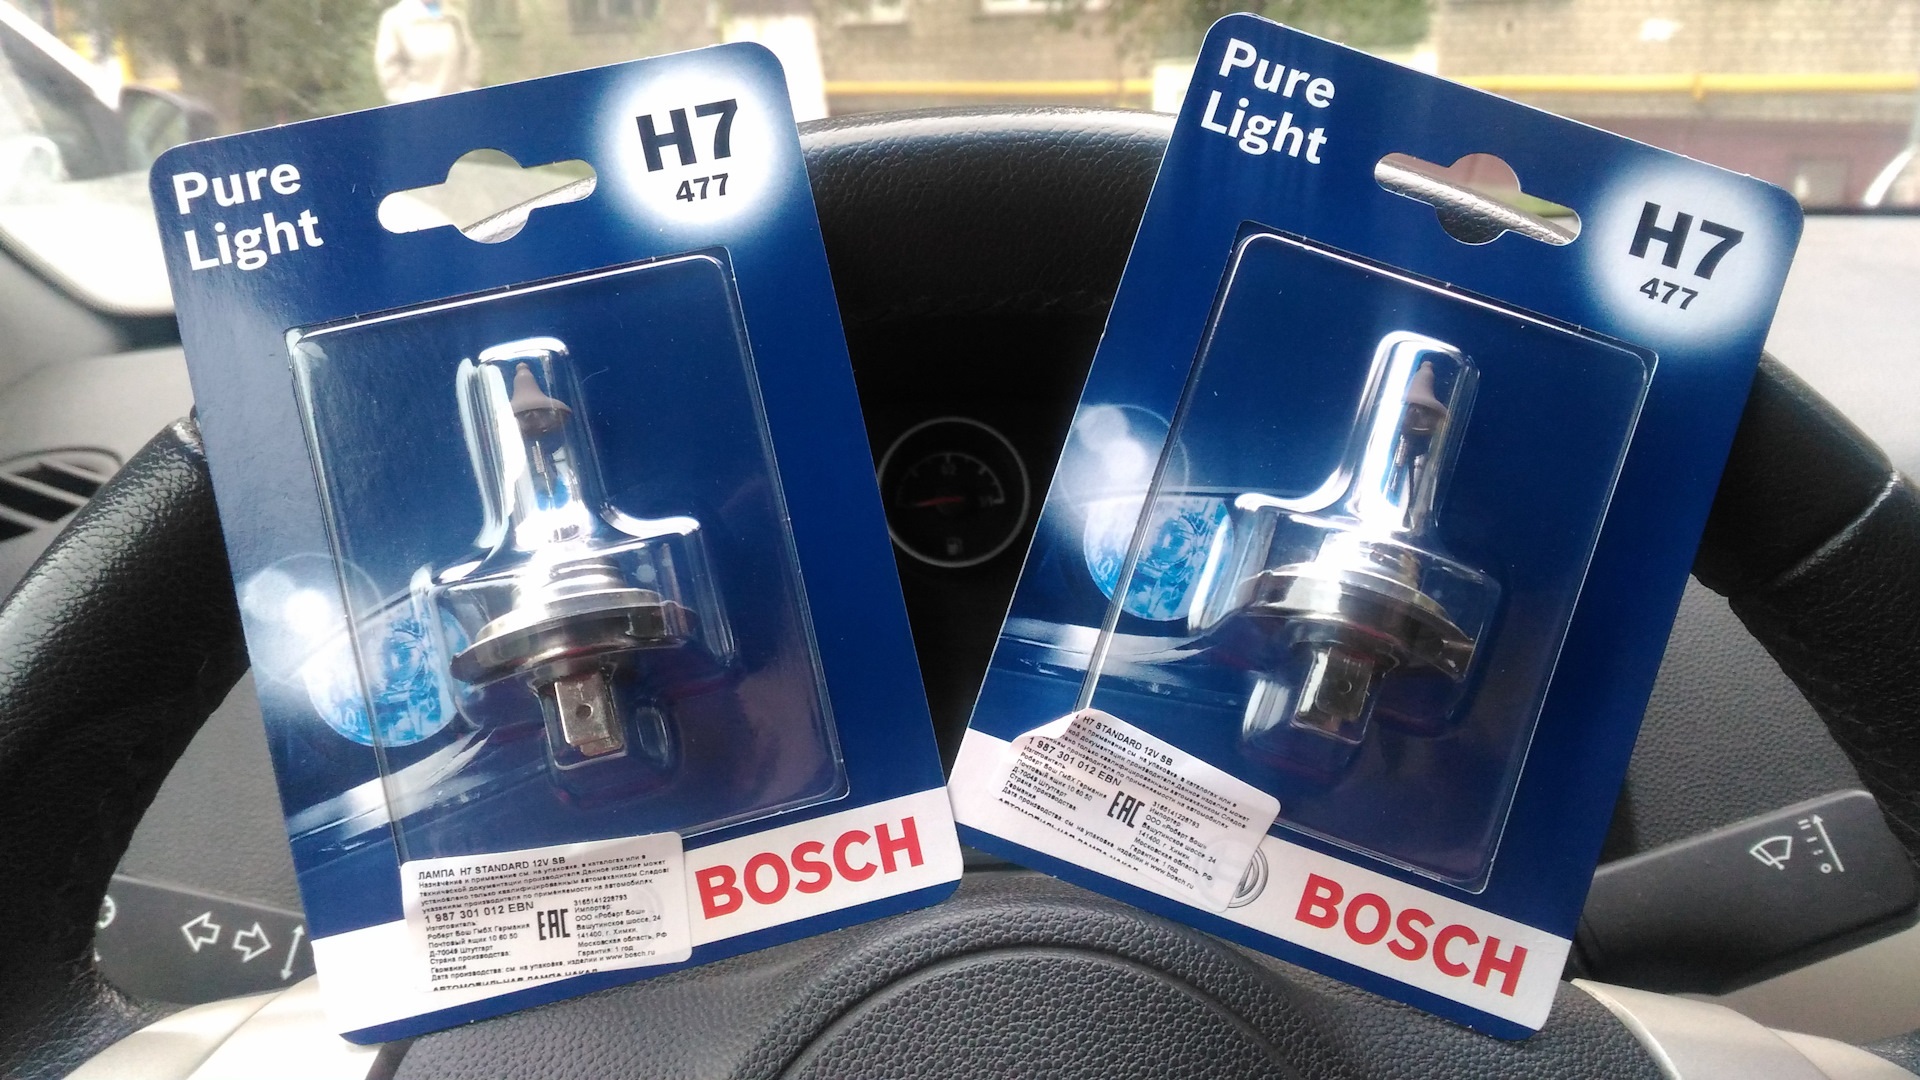 Bosch h7 12v 55w. Лампы бош Пур Лайт h7. Bosch Pure Light 1987301012 h7 12v 55w. Лампы бош н1 Pure Light. Лампочка h7 Bosch LF.